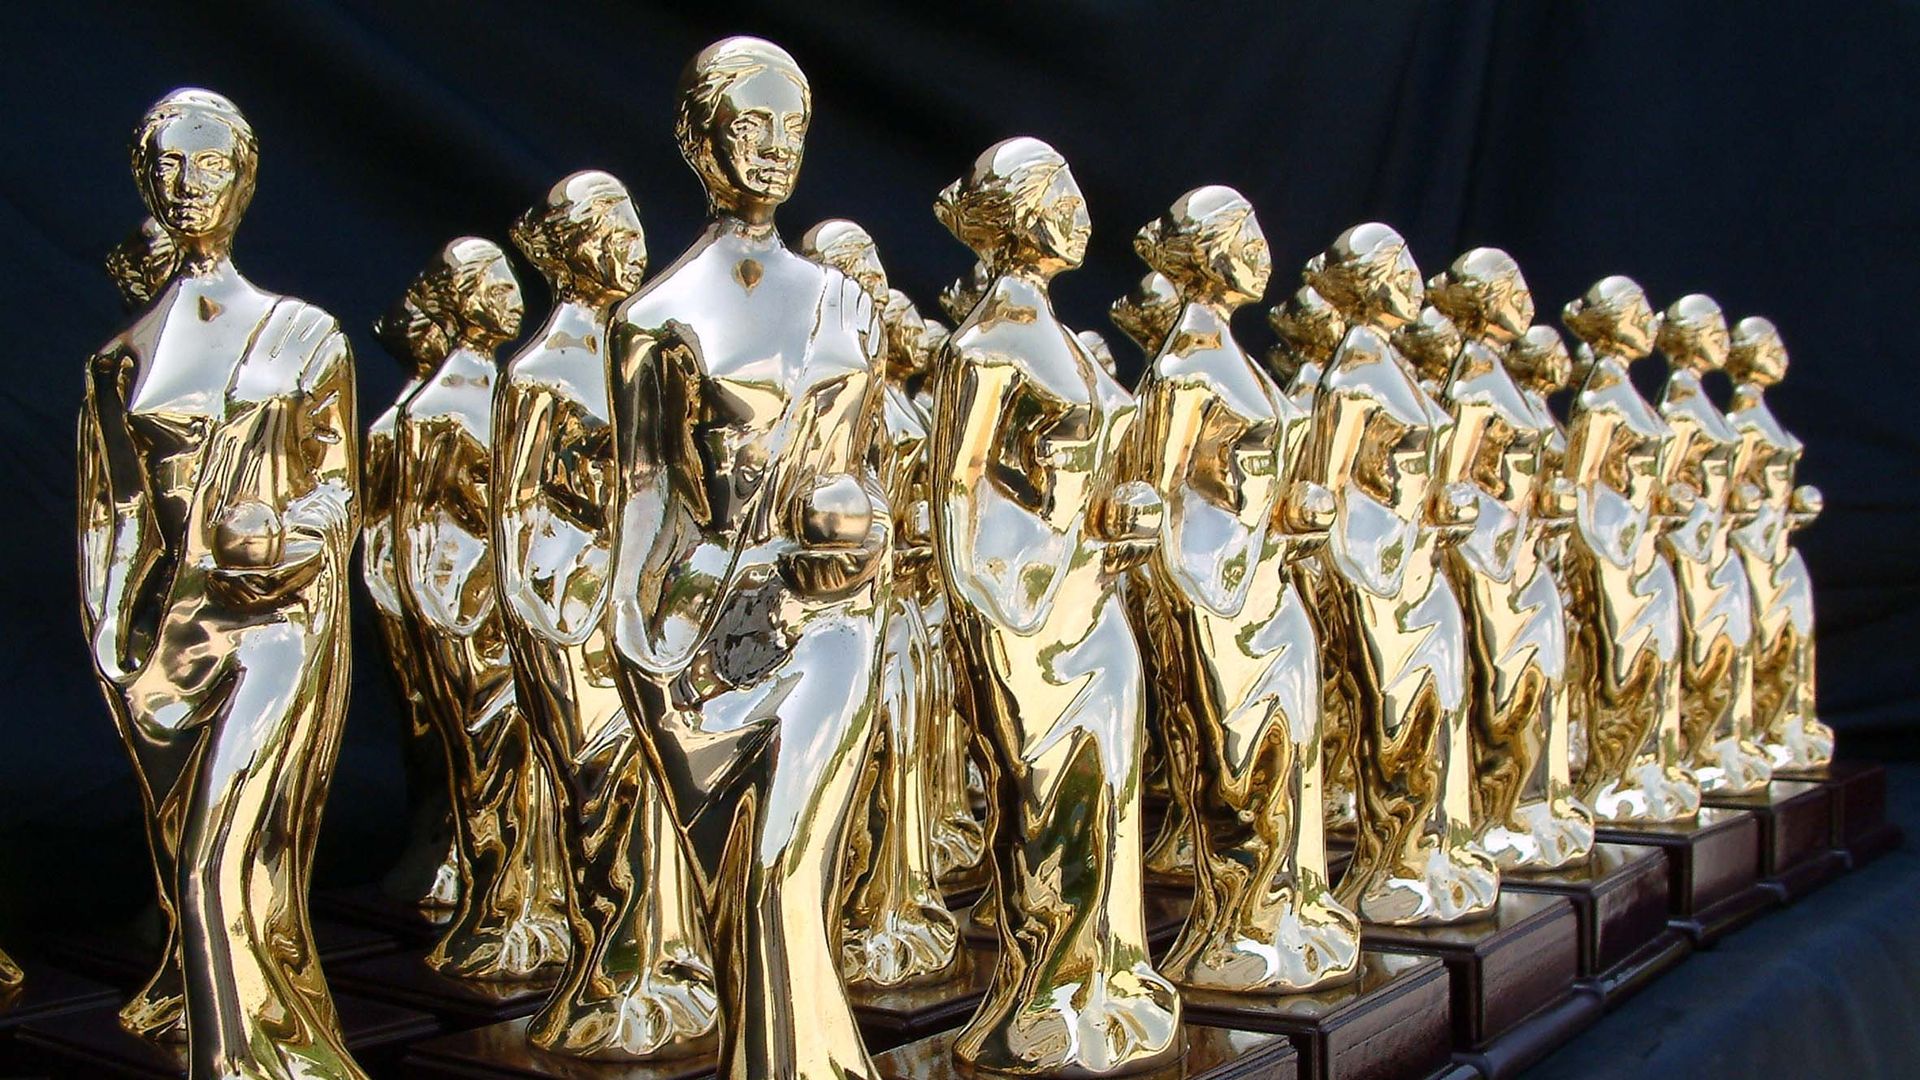 58. Antalya Altın Portakal Film Festivali’nde 1 milyon 400 bin lira ödül dağıtılacak